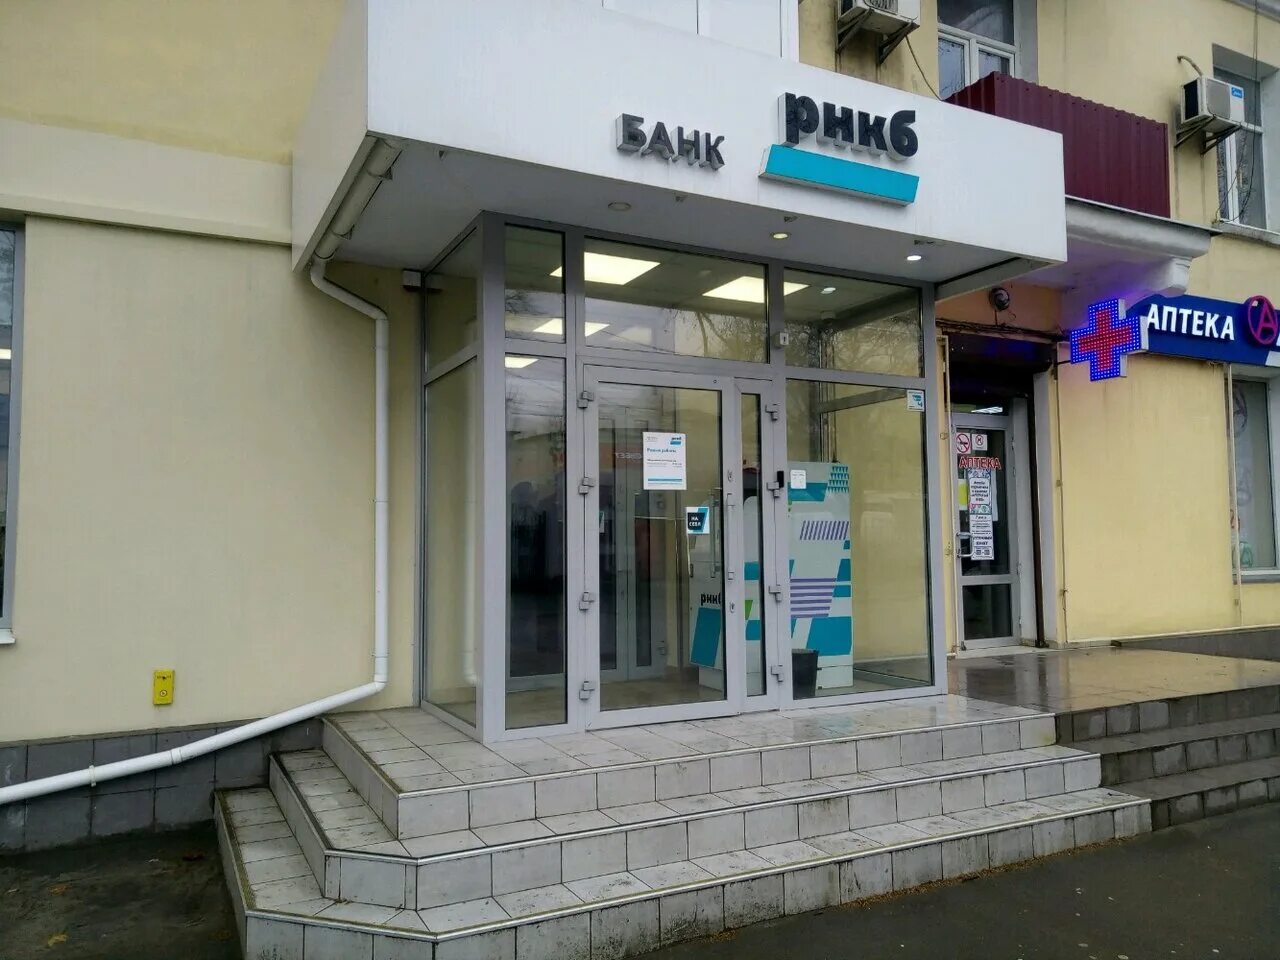 Рнкб банк пао симферополь